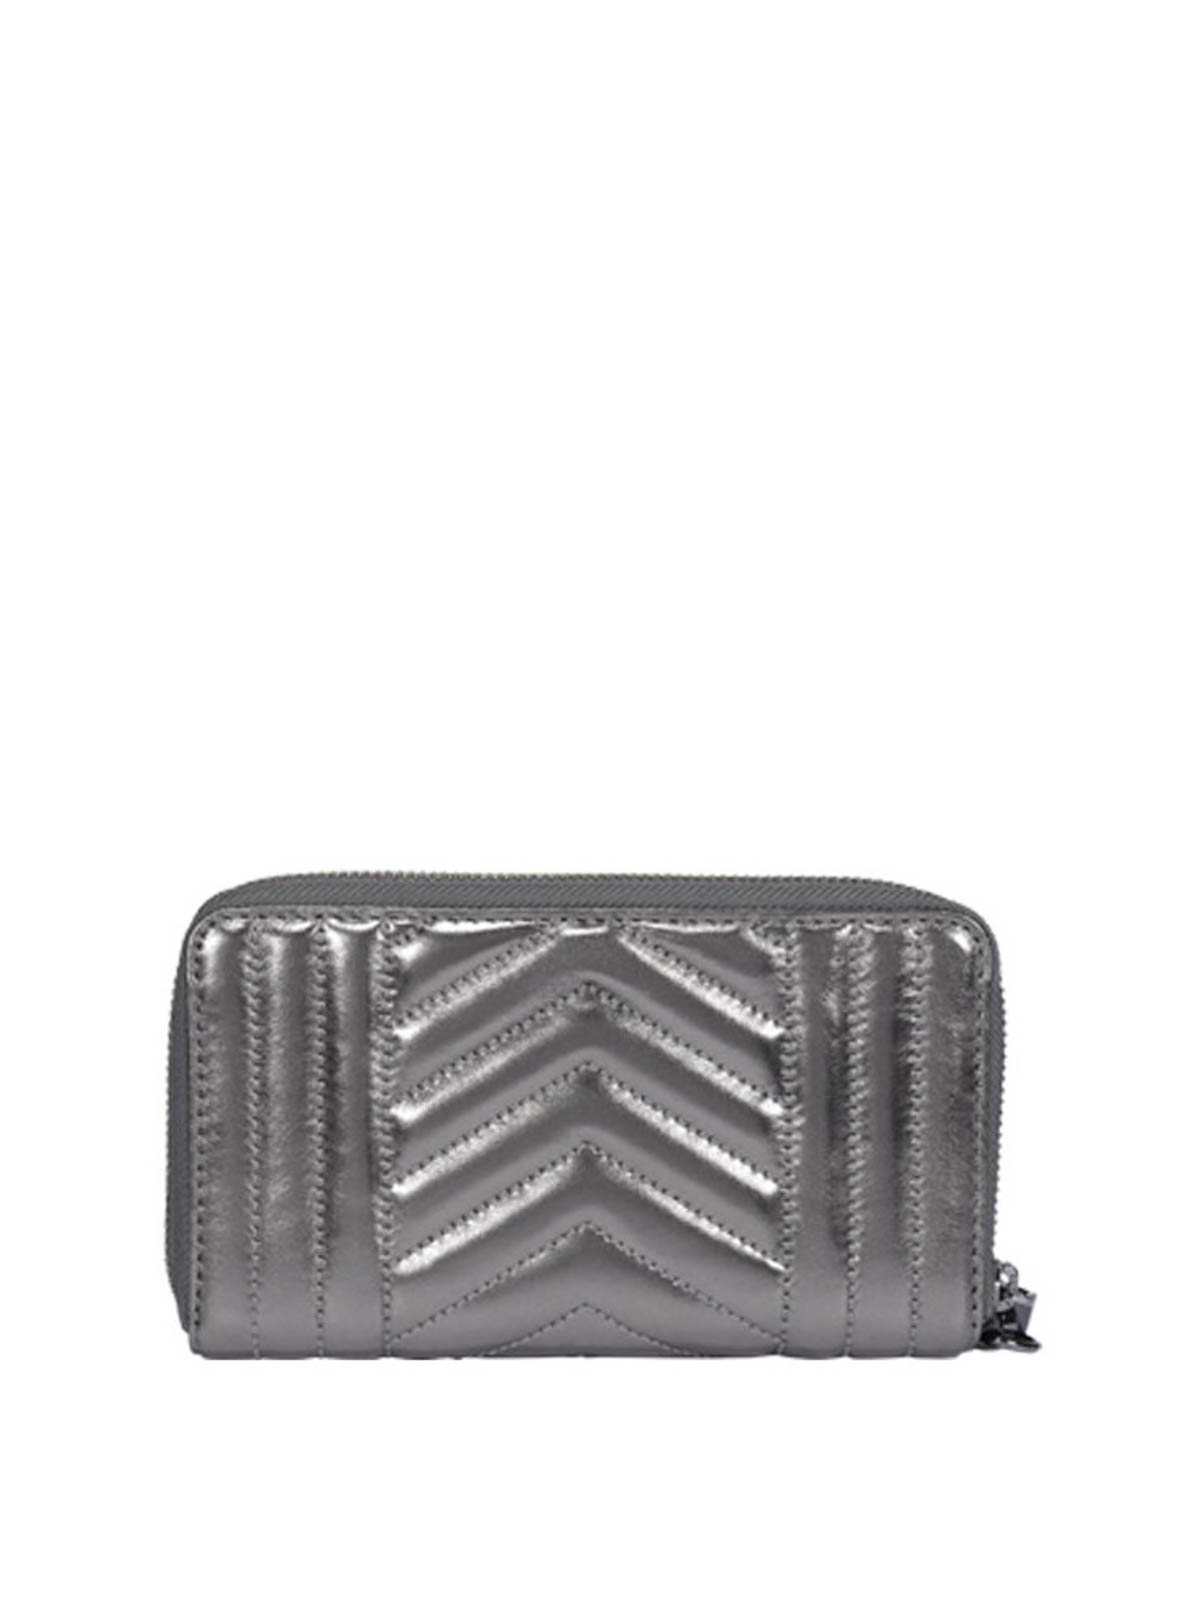 metallic michael kors wallet